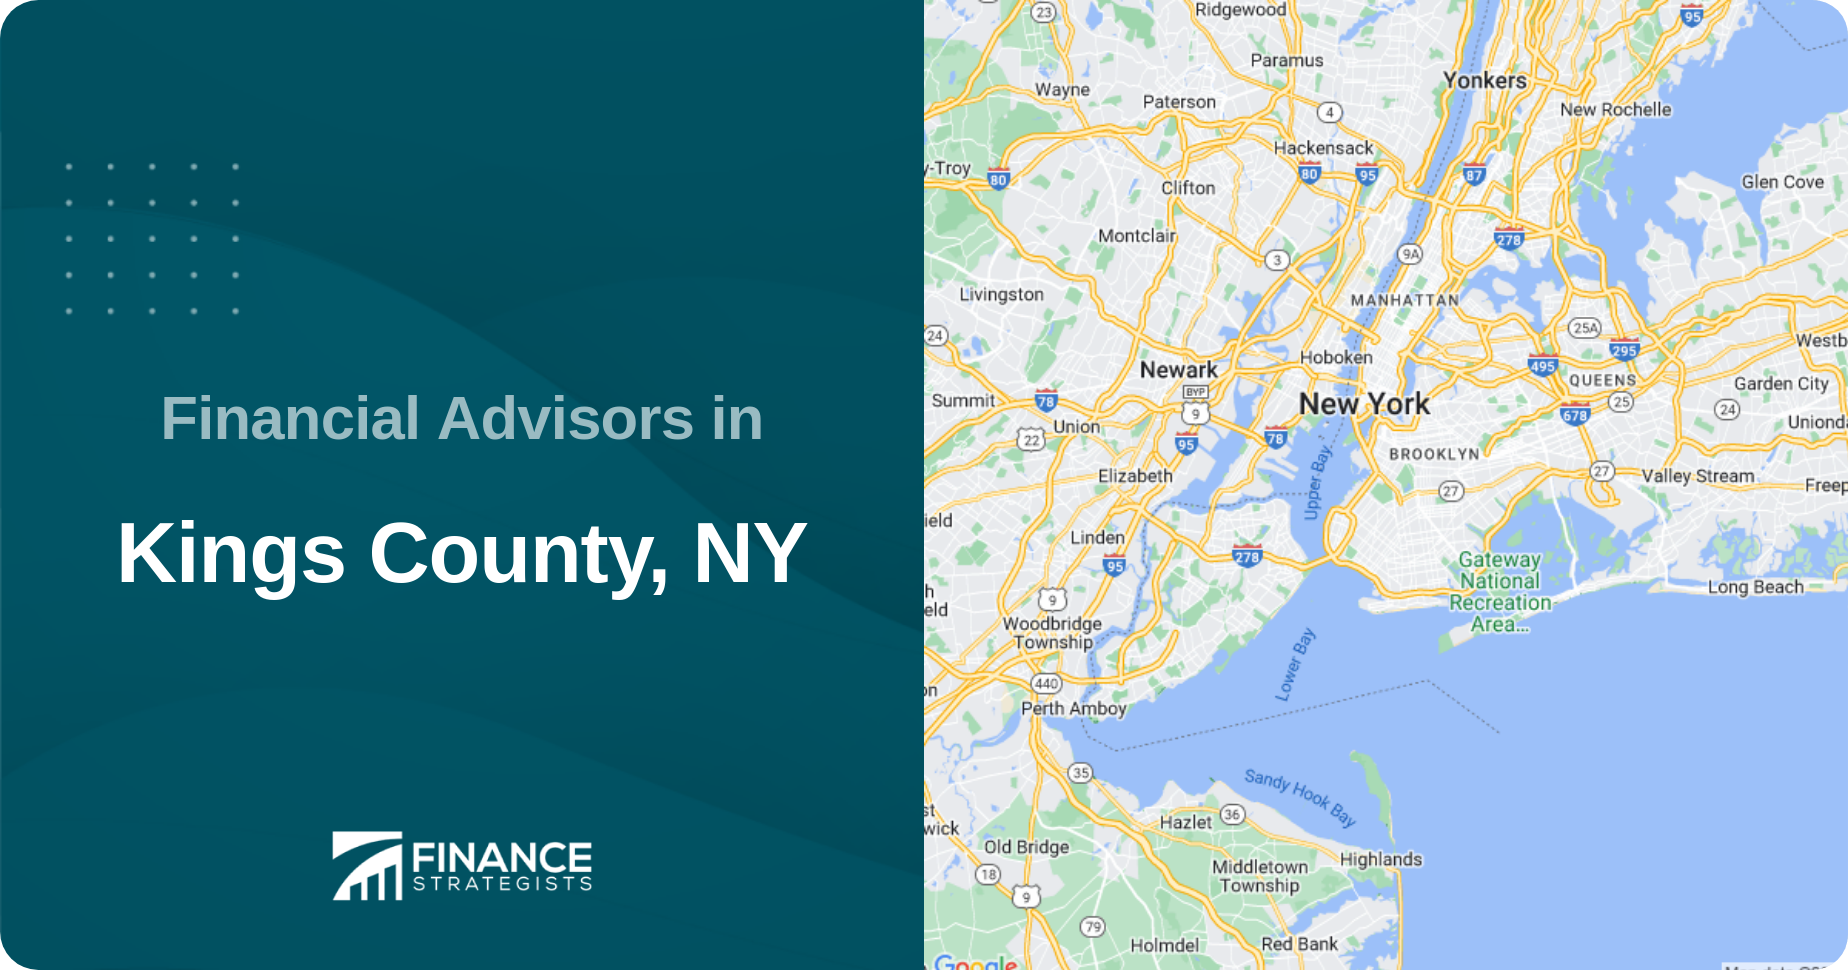 Financial Advisors in Kings County, NY